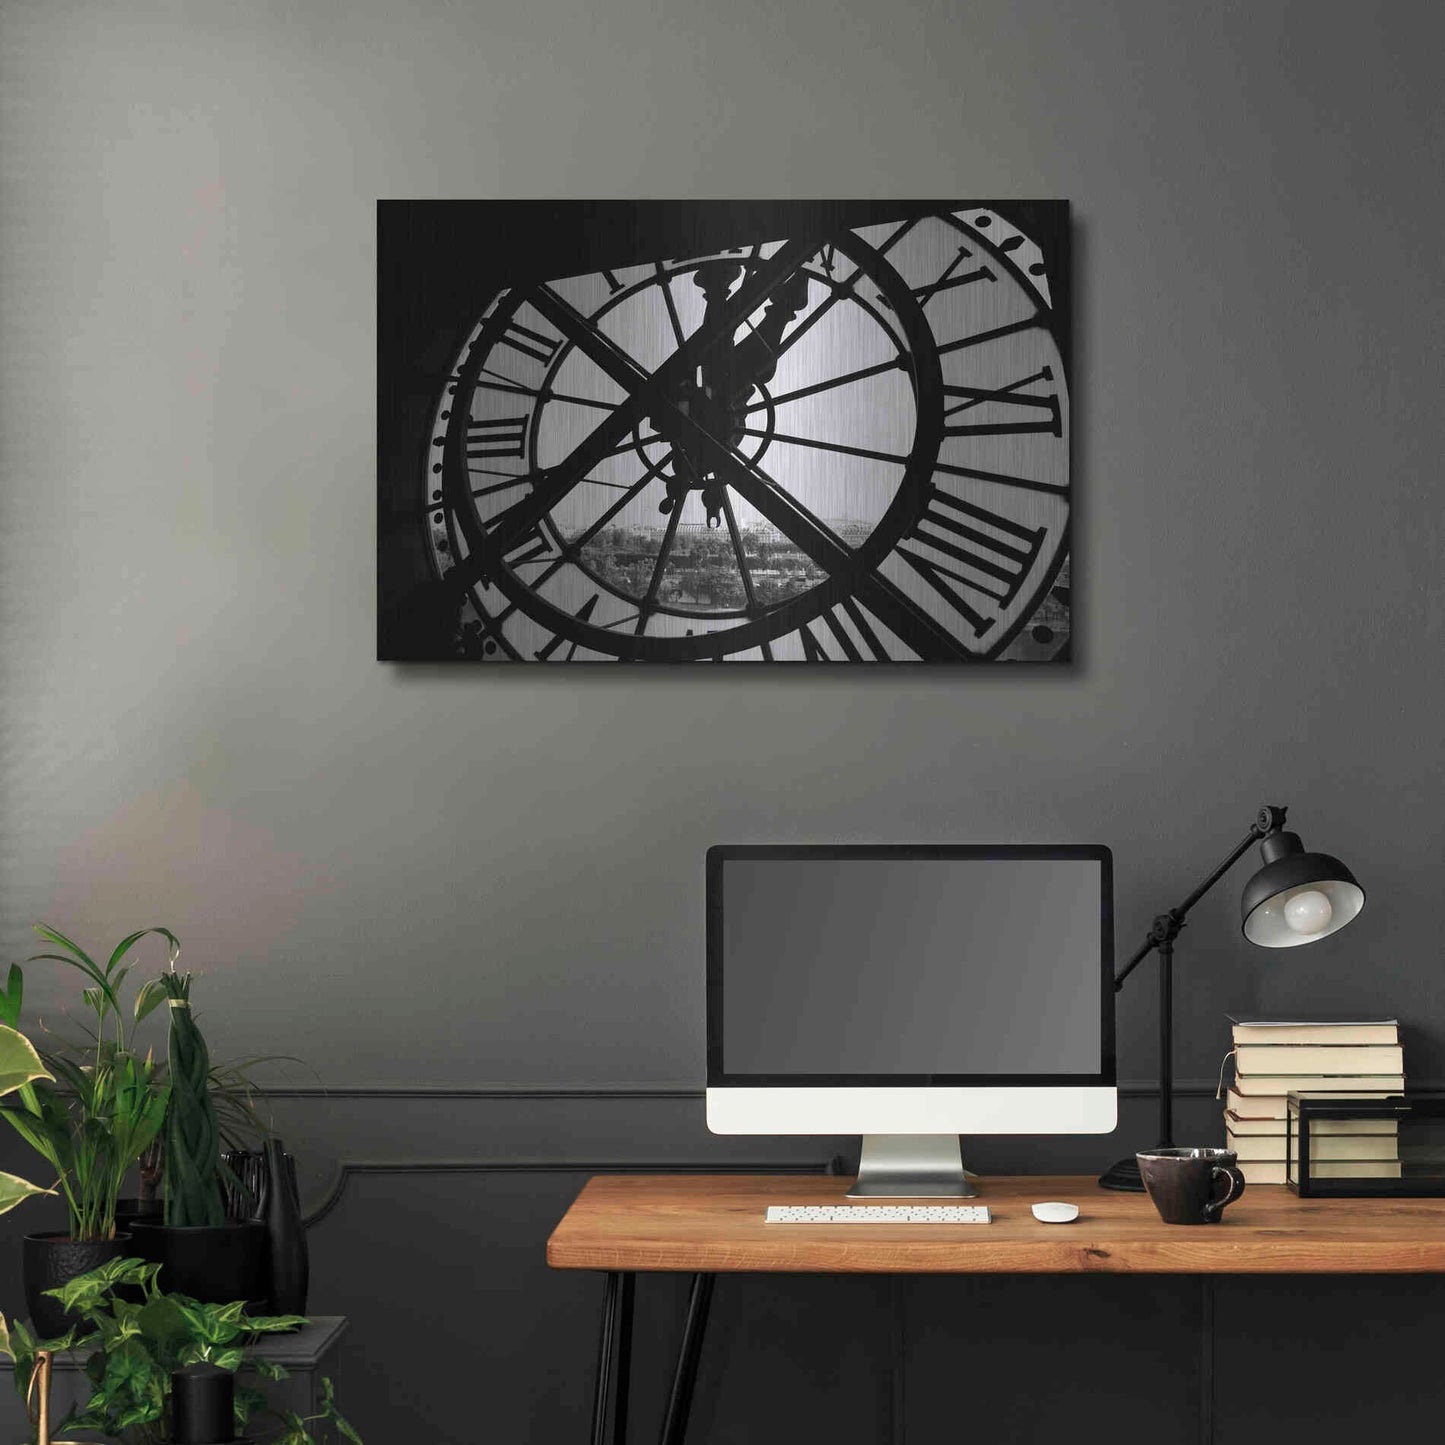 Luxe Metal Art 'Clock Tower' by Design Fabrikken, Metal Wall Art,36x24